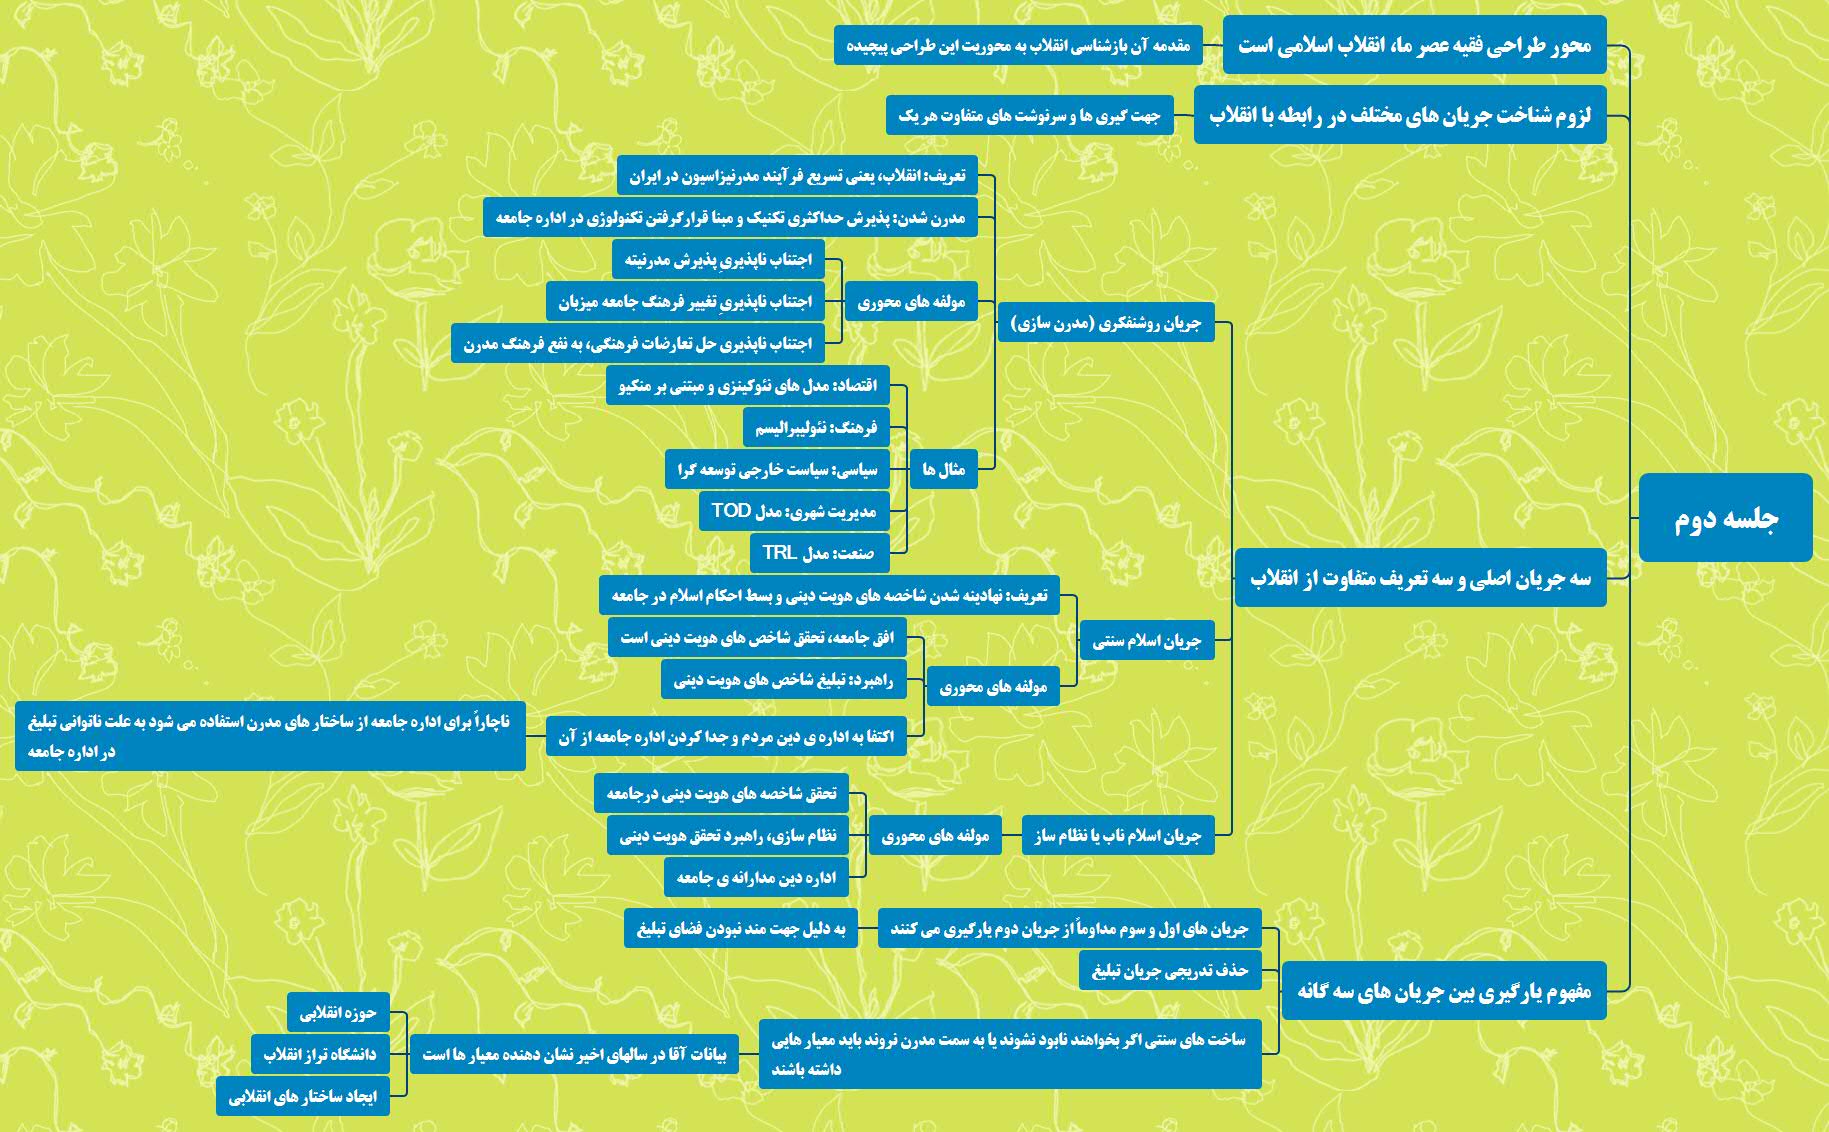 نقشه ذهنی جلسه دوم دوره جهت حرکت انقلاب اسلامی